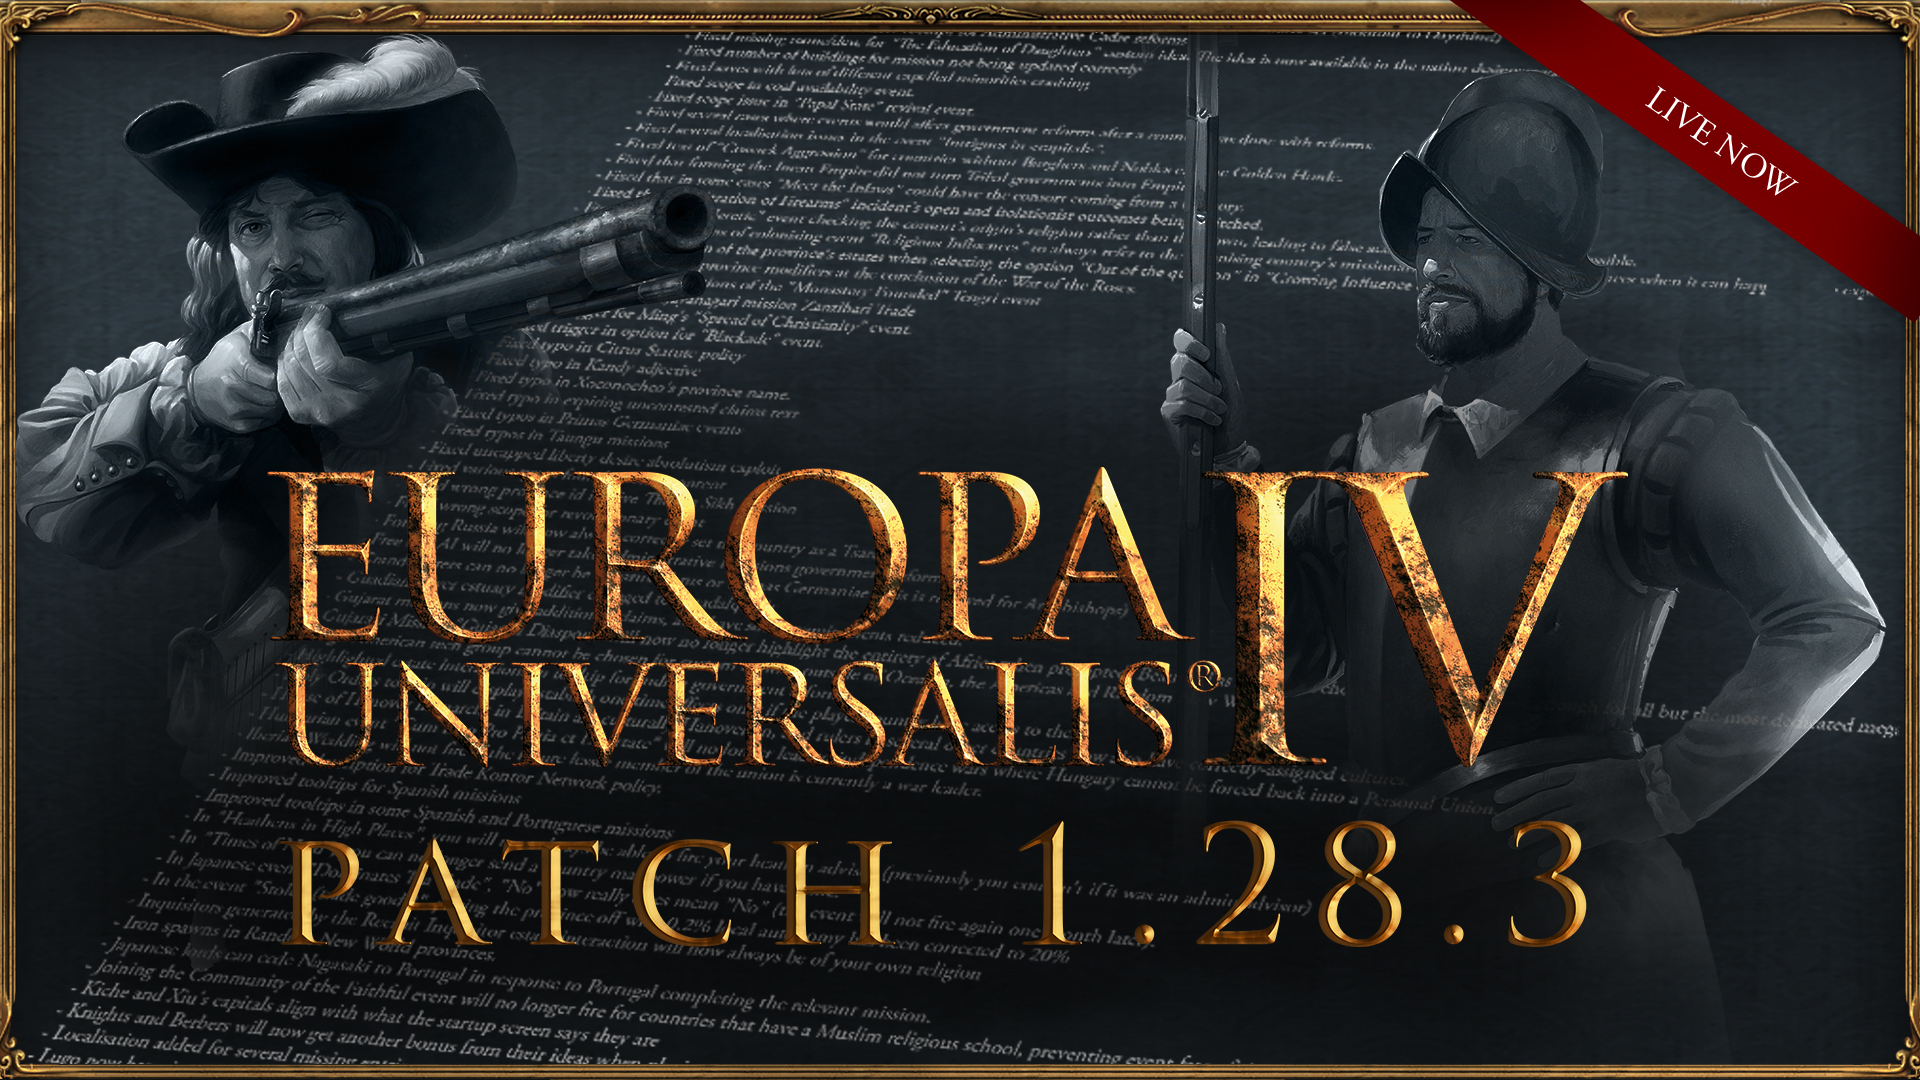 europa universalis 4 steam workshop fix revolt